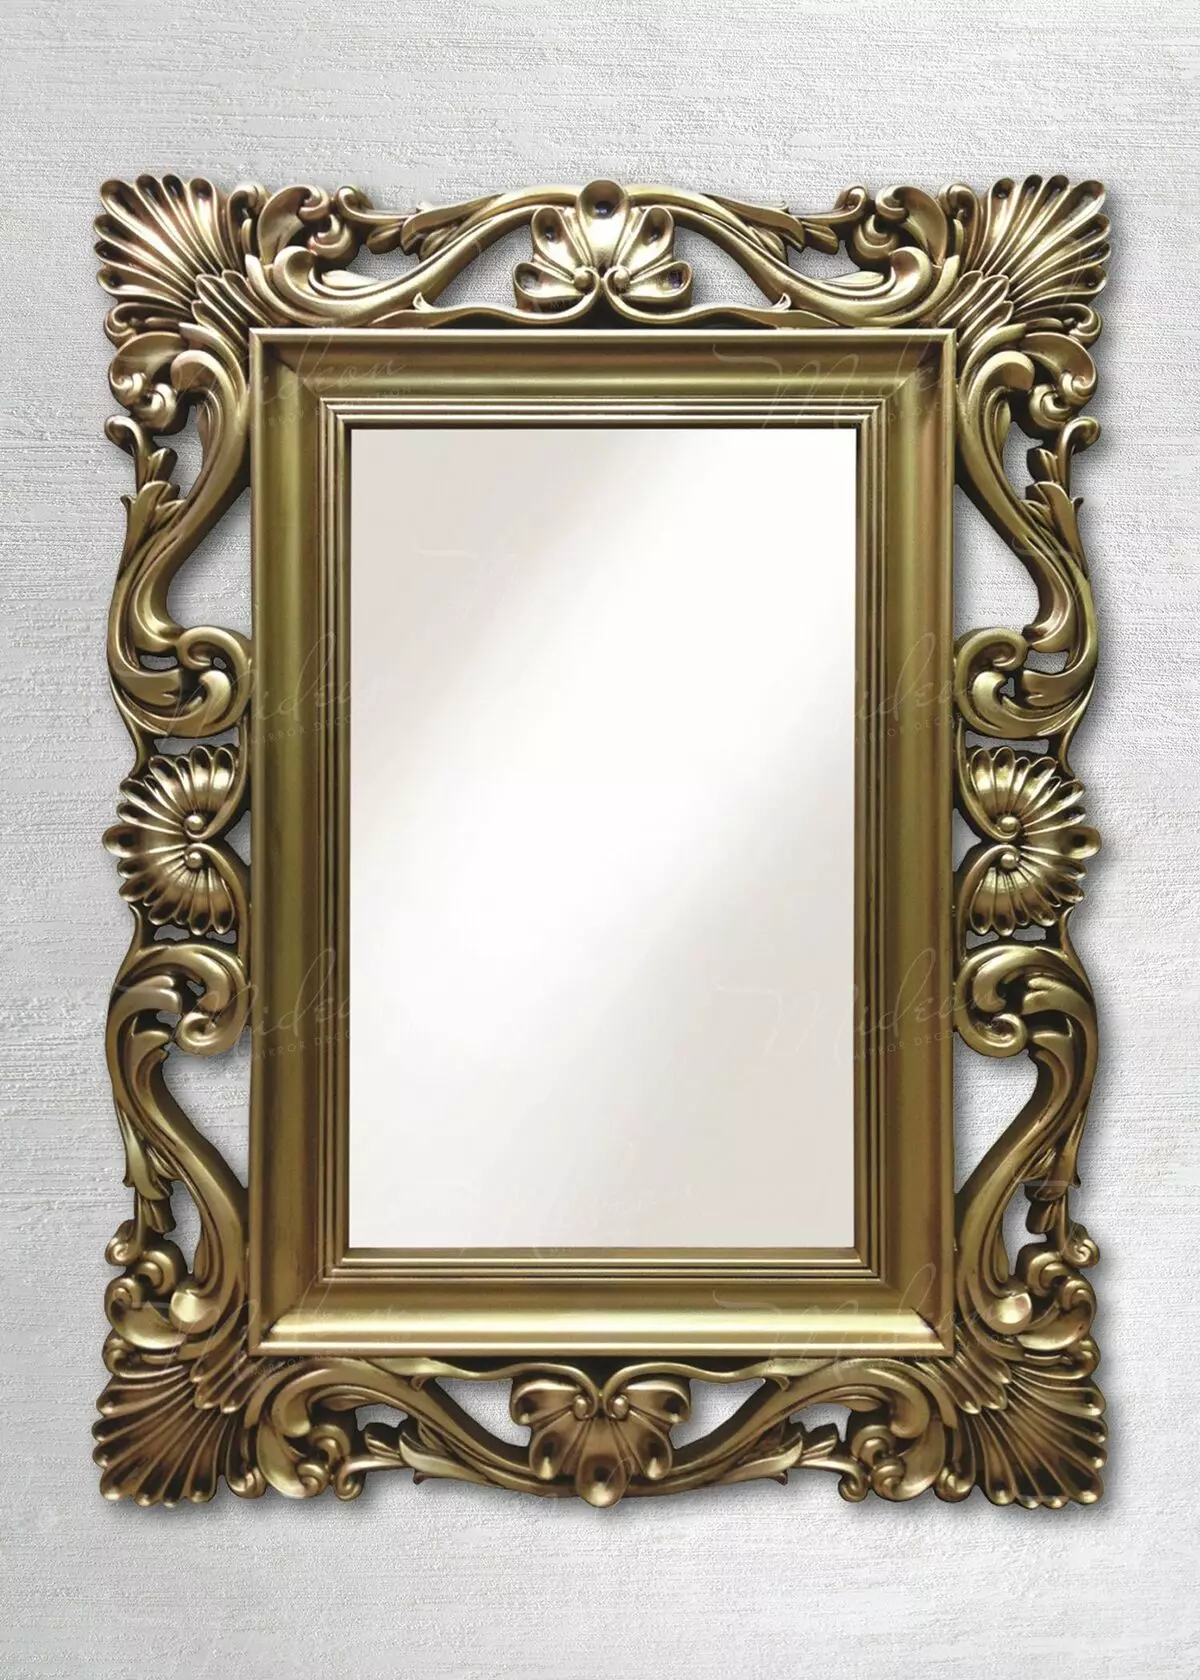 9 zapanjujuće unutarnje ogledala